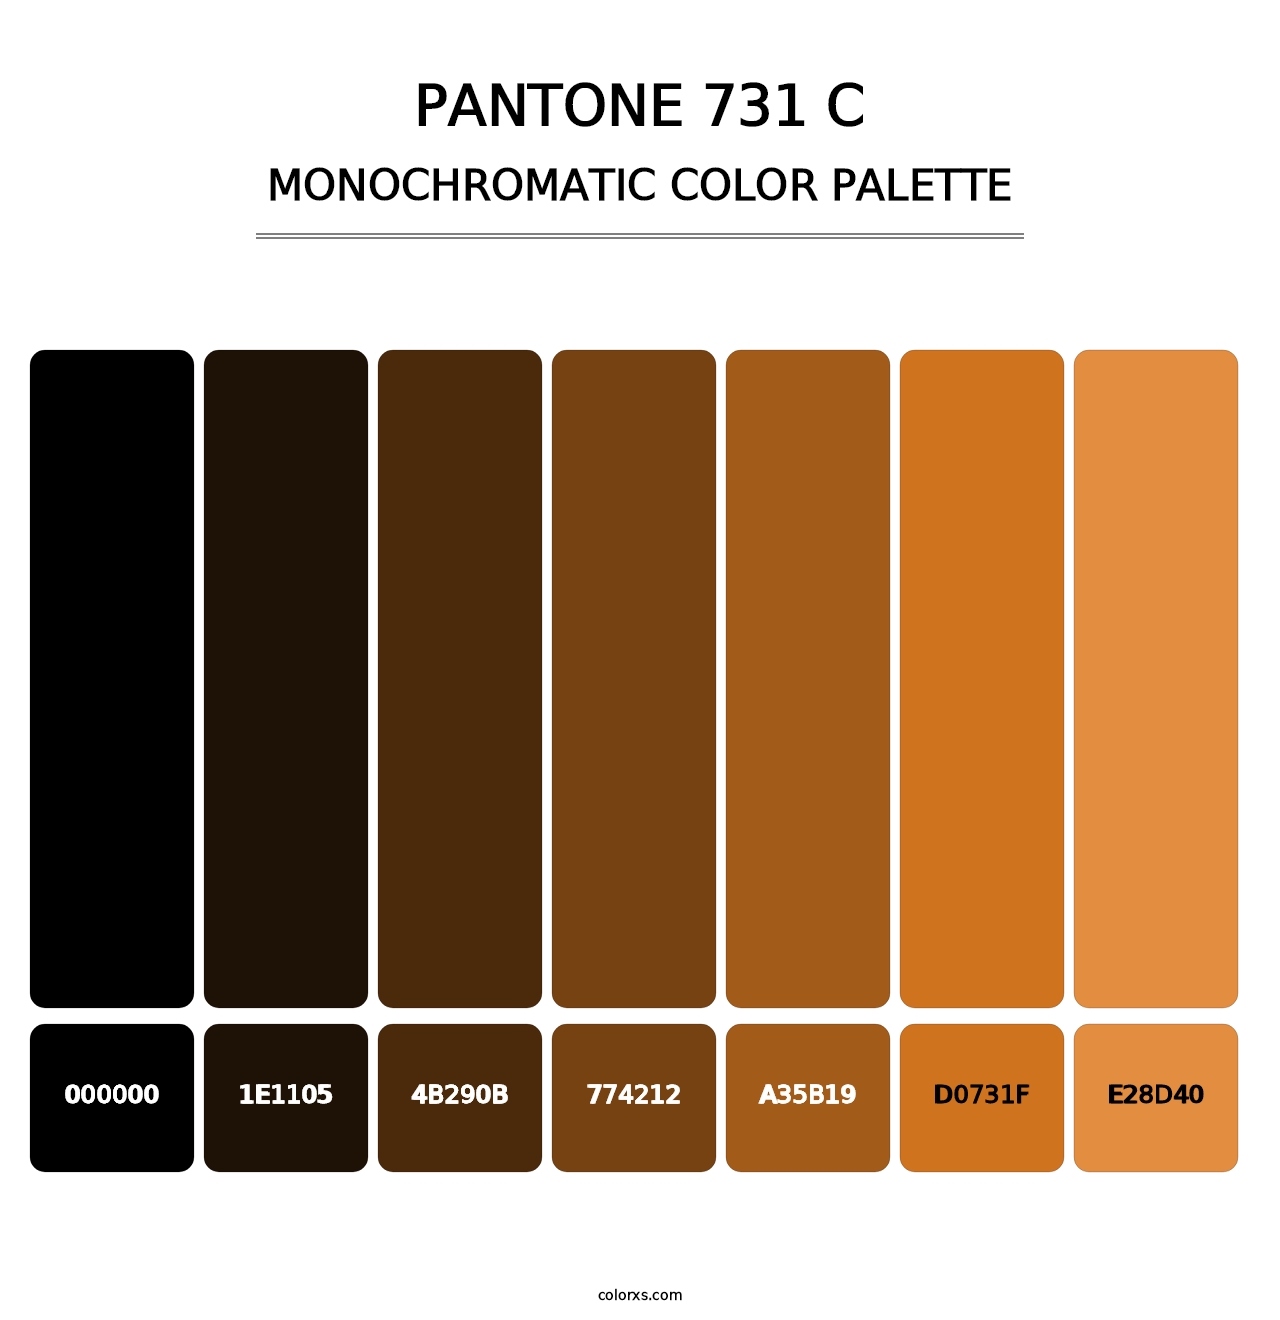 PANTONE 731 C - Monochromatic Color Palette